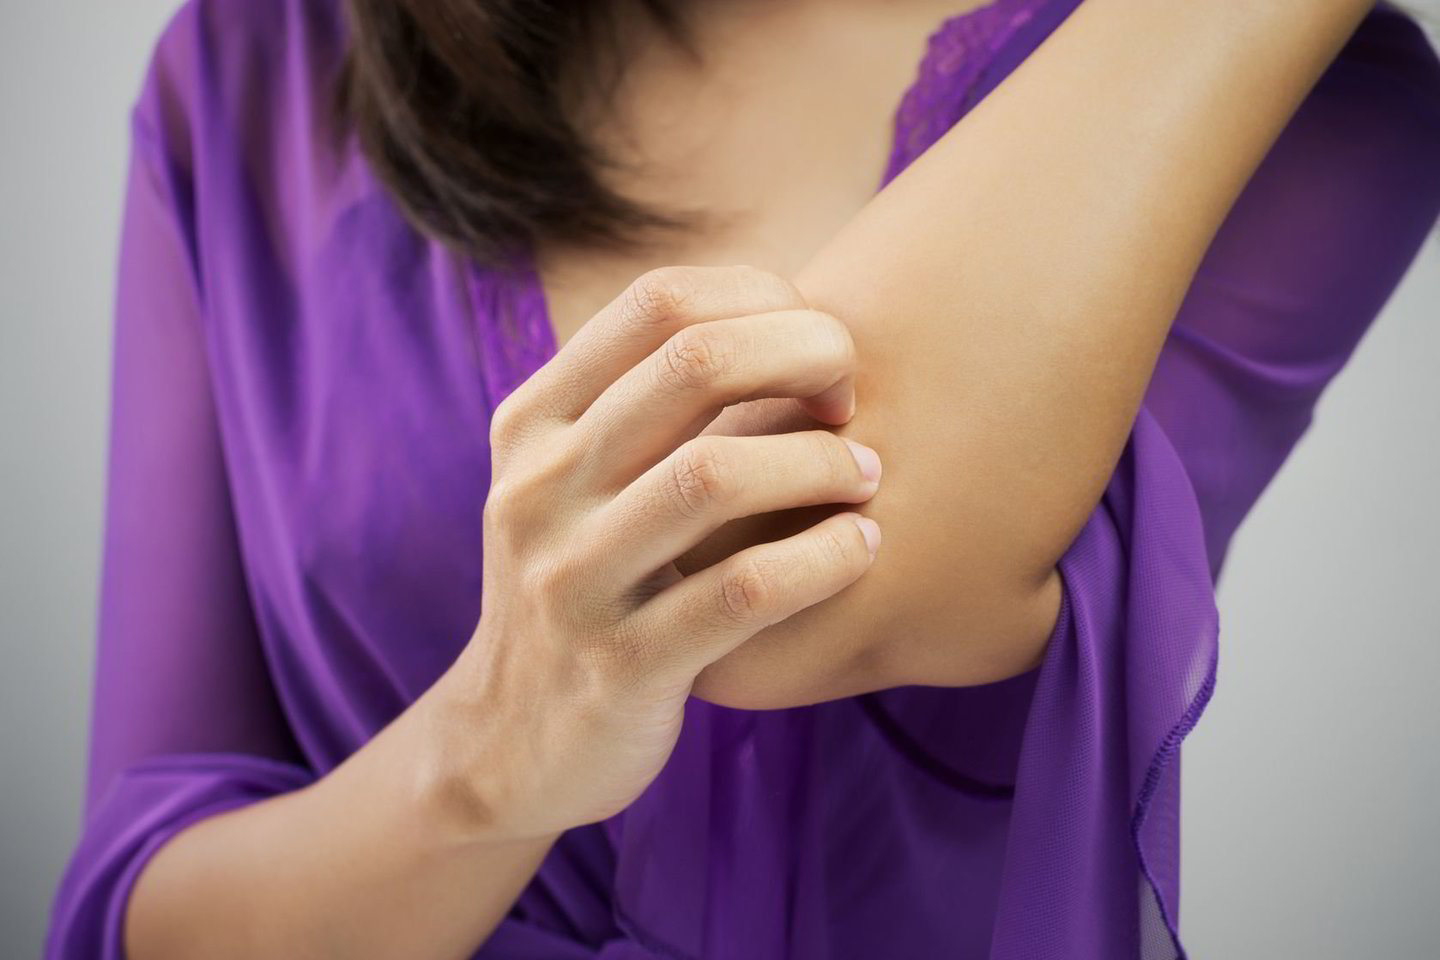   Niežtinti oda arba bėrimai gali būti autoimuninės ligos, pavyzdžiui, žvynelinės, požymis. <br>  123rf.com nuotr. 